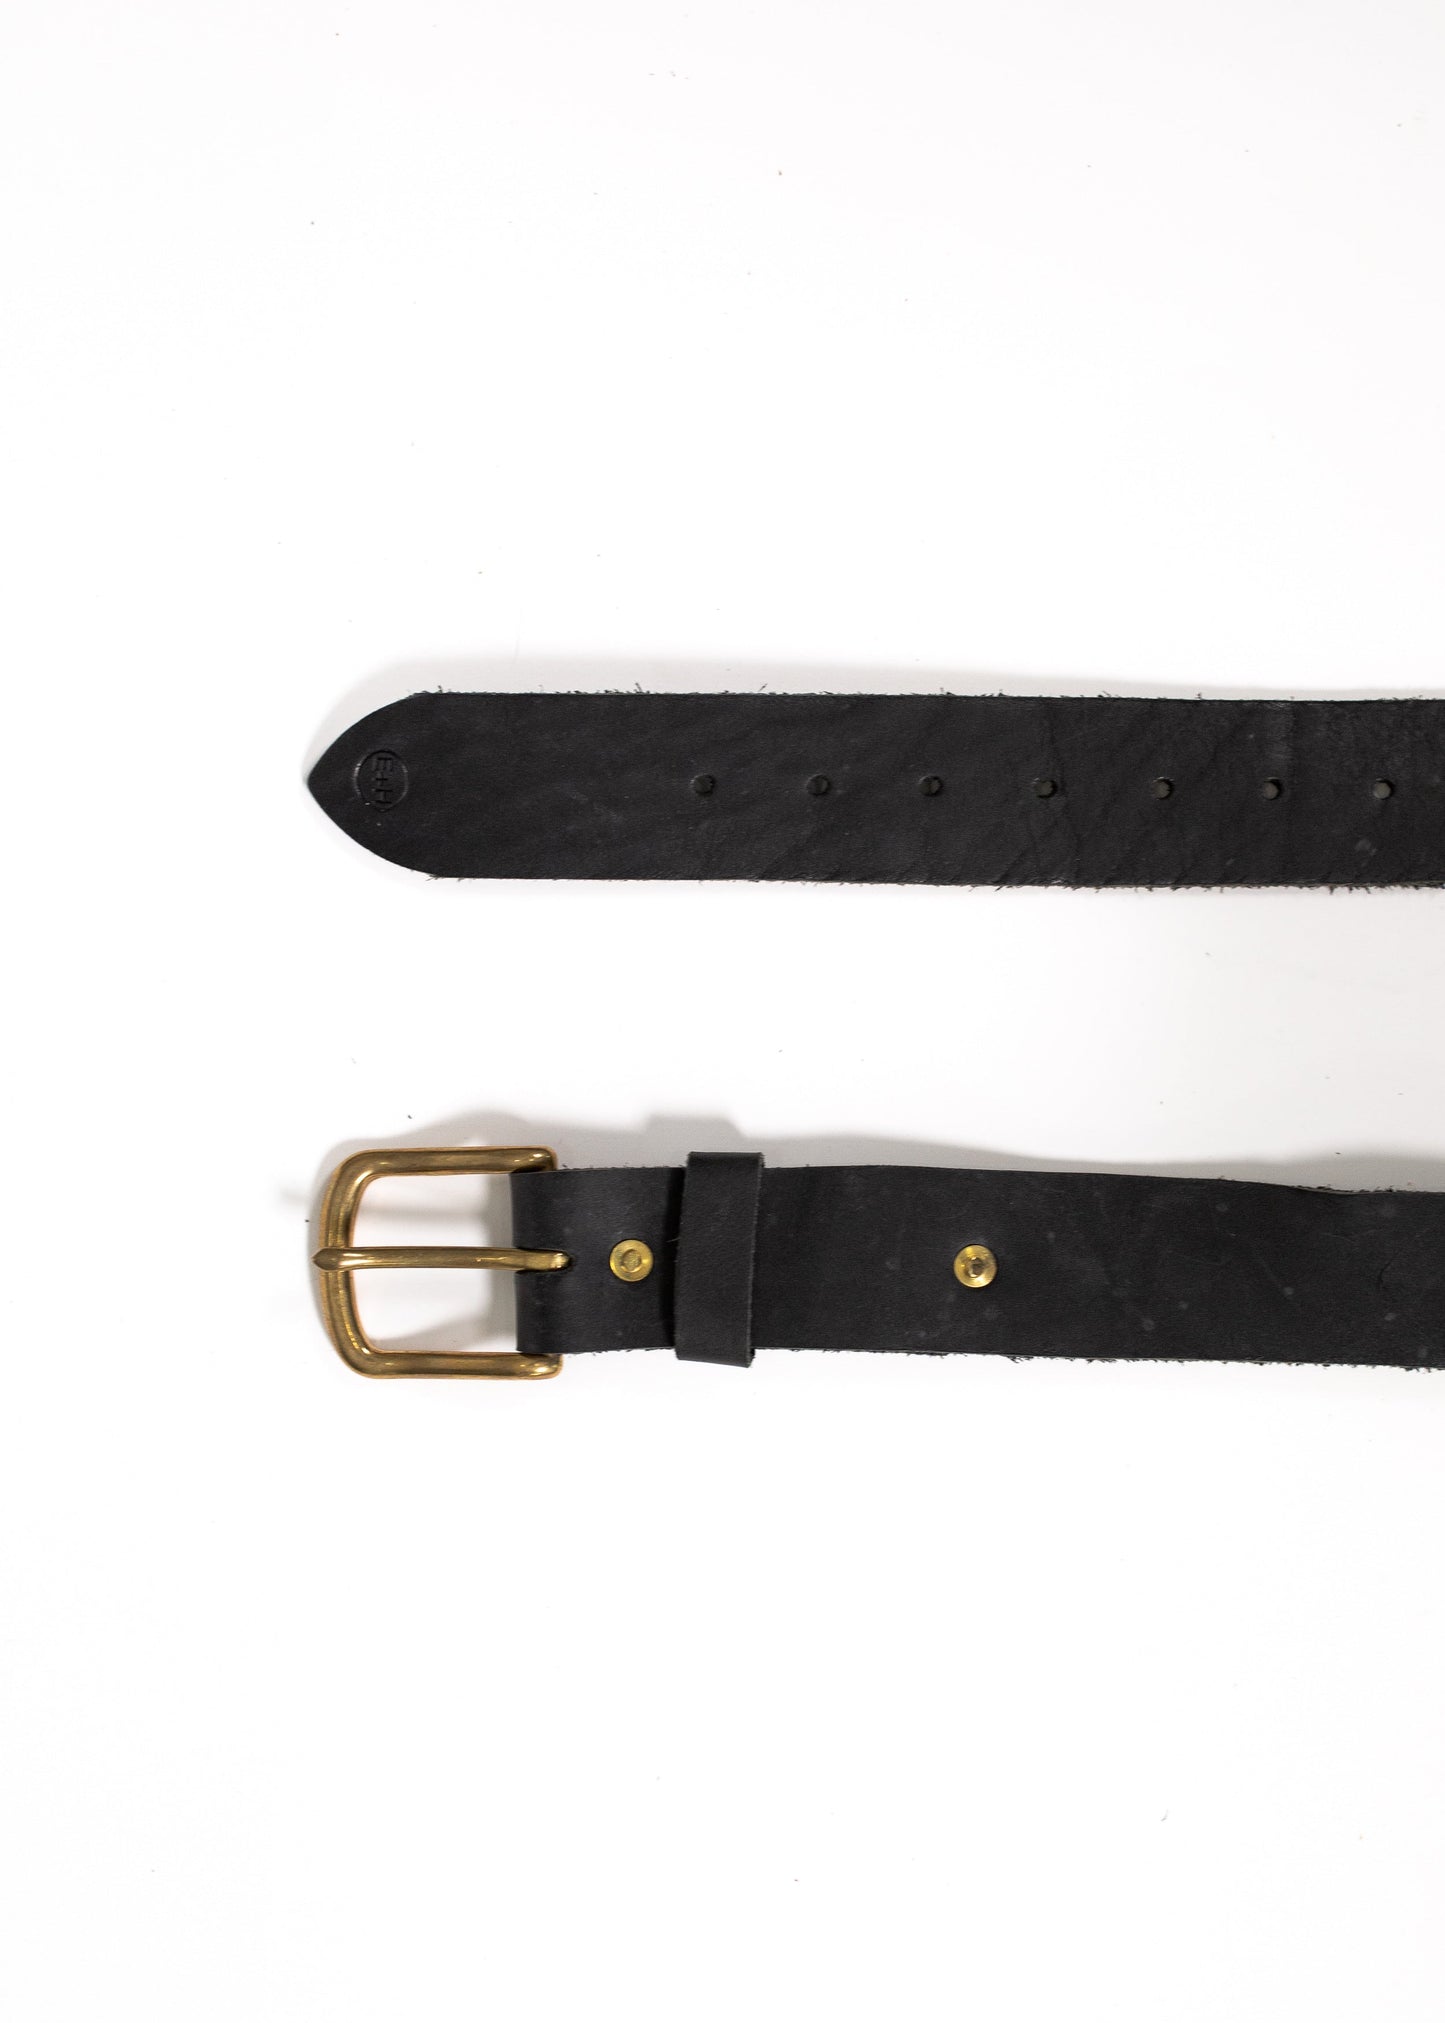 Roscoe Belt - 1 1/2 inch width - Wholesale